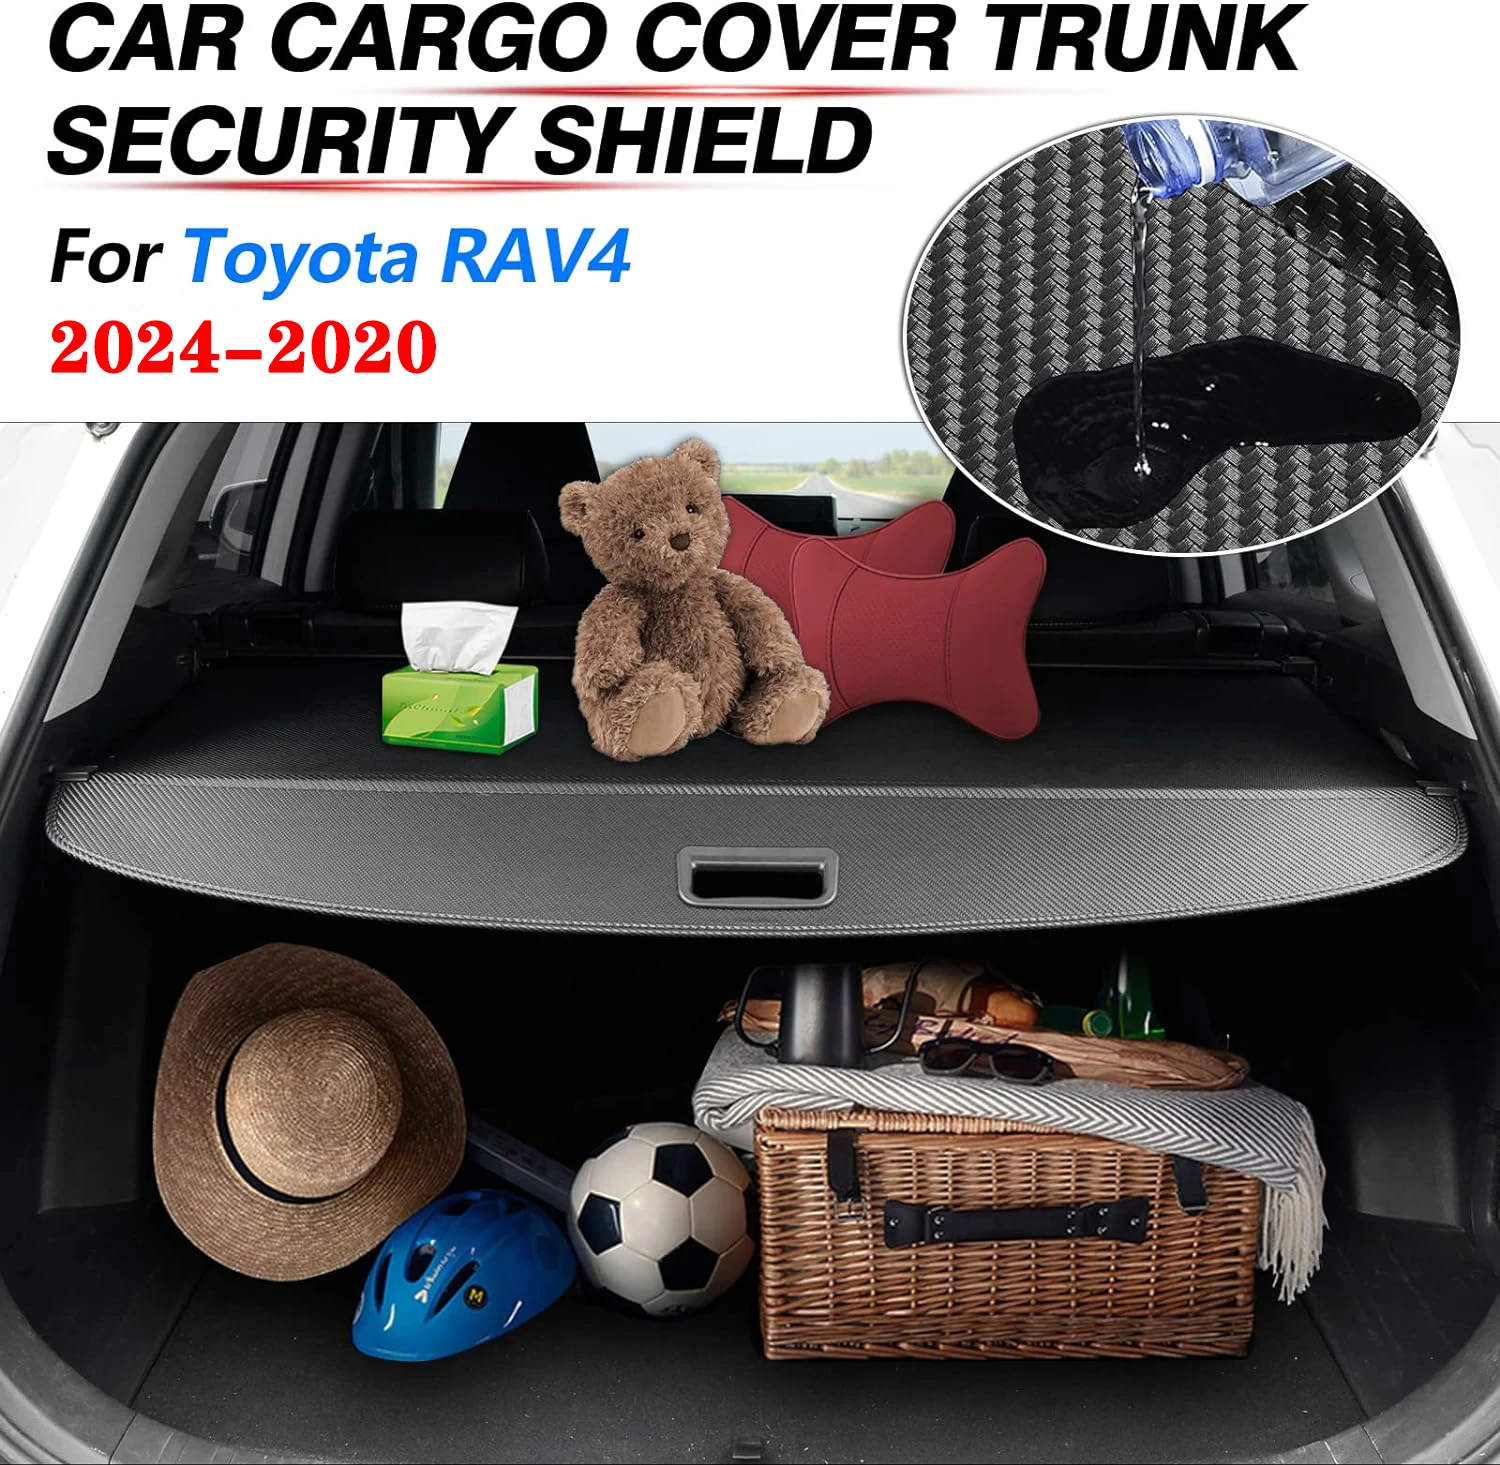 Cargo Cover for Toyota RAV4 2024-2020, Retractable Rear Trunk Security Cover Shielding Shade Black Carbon Fiber Texture